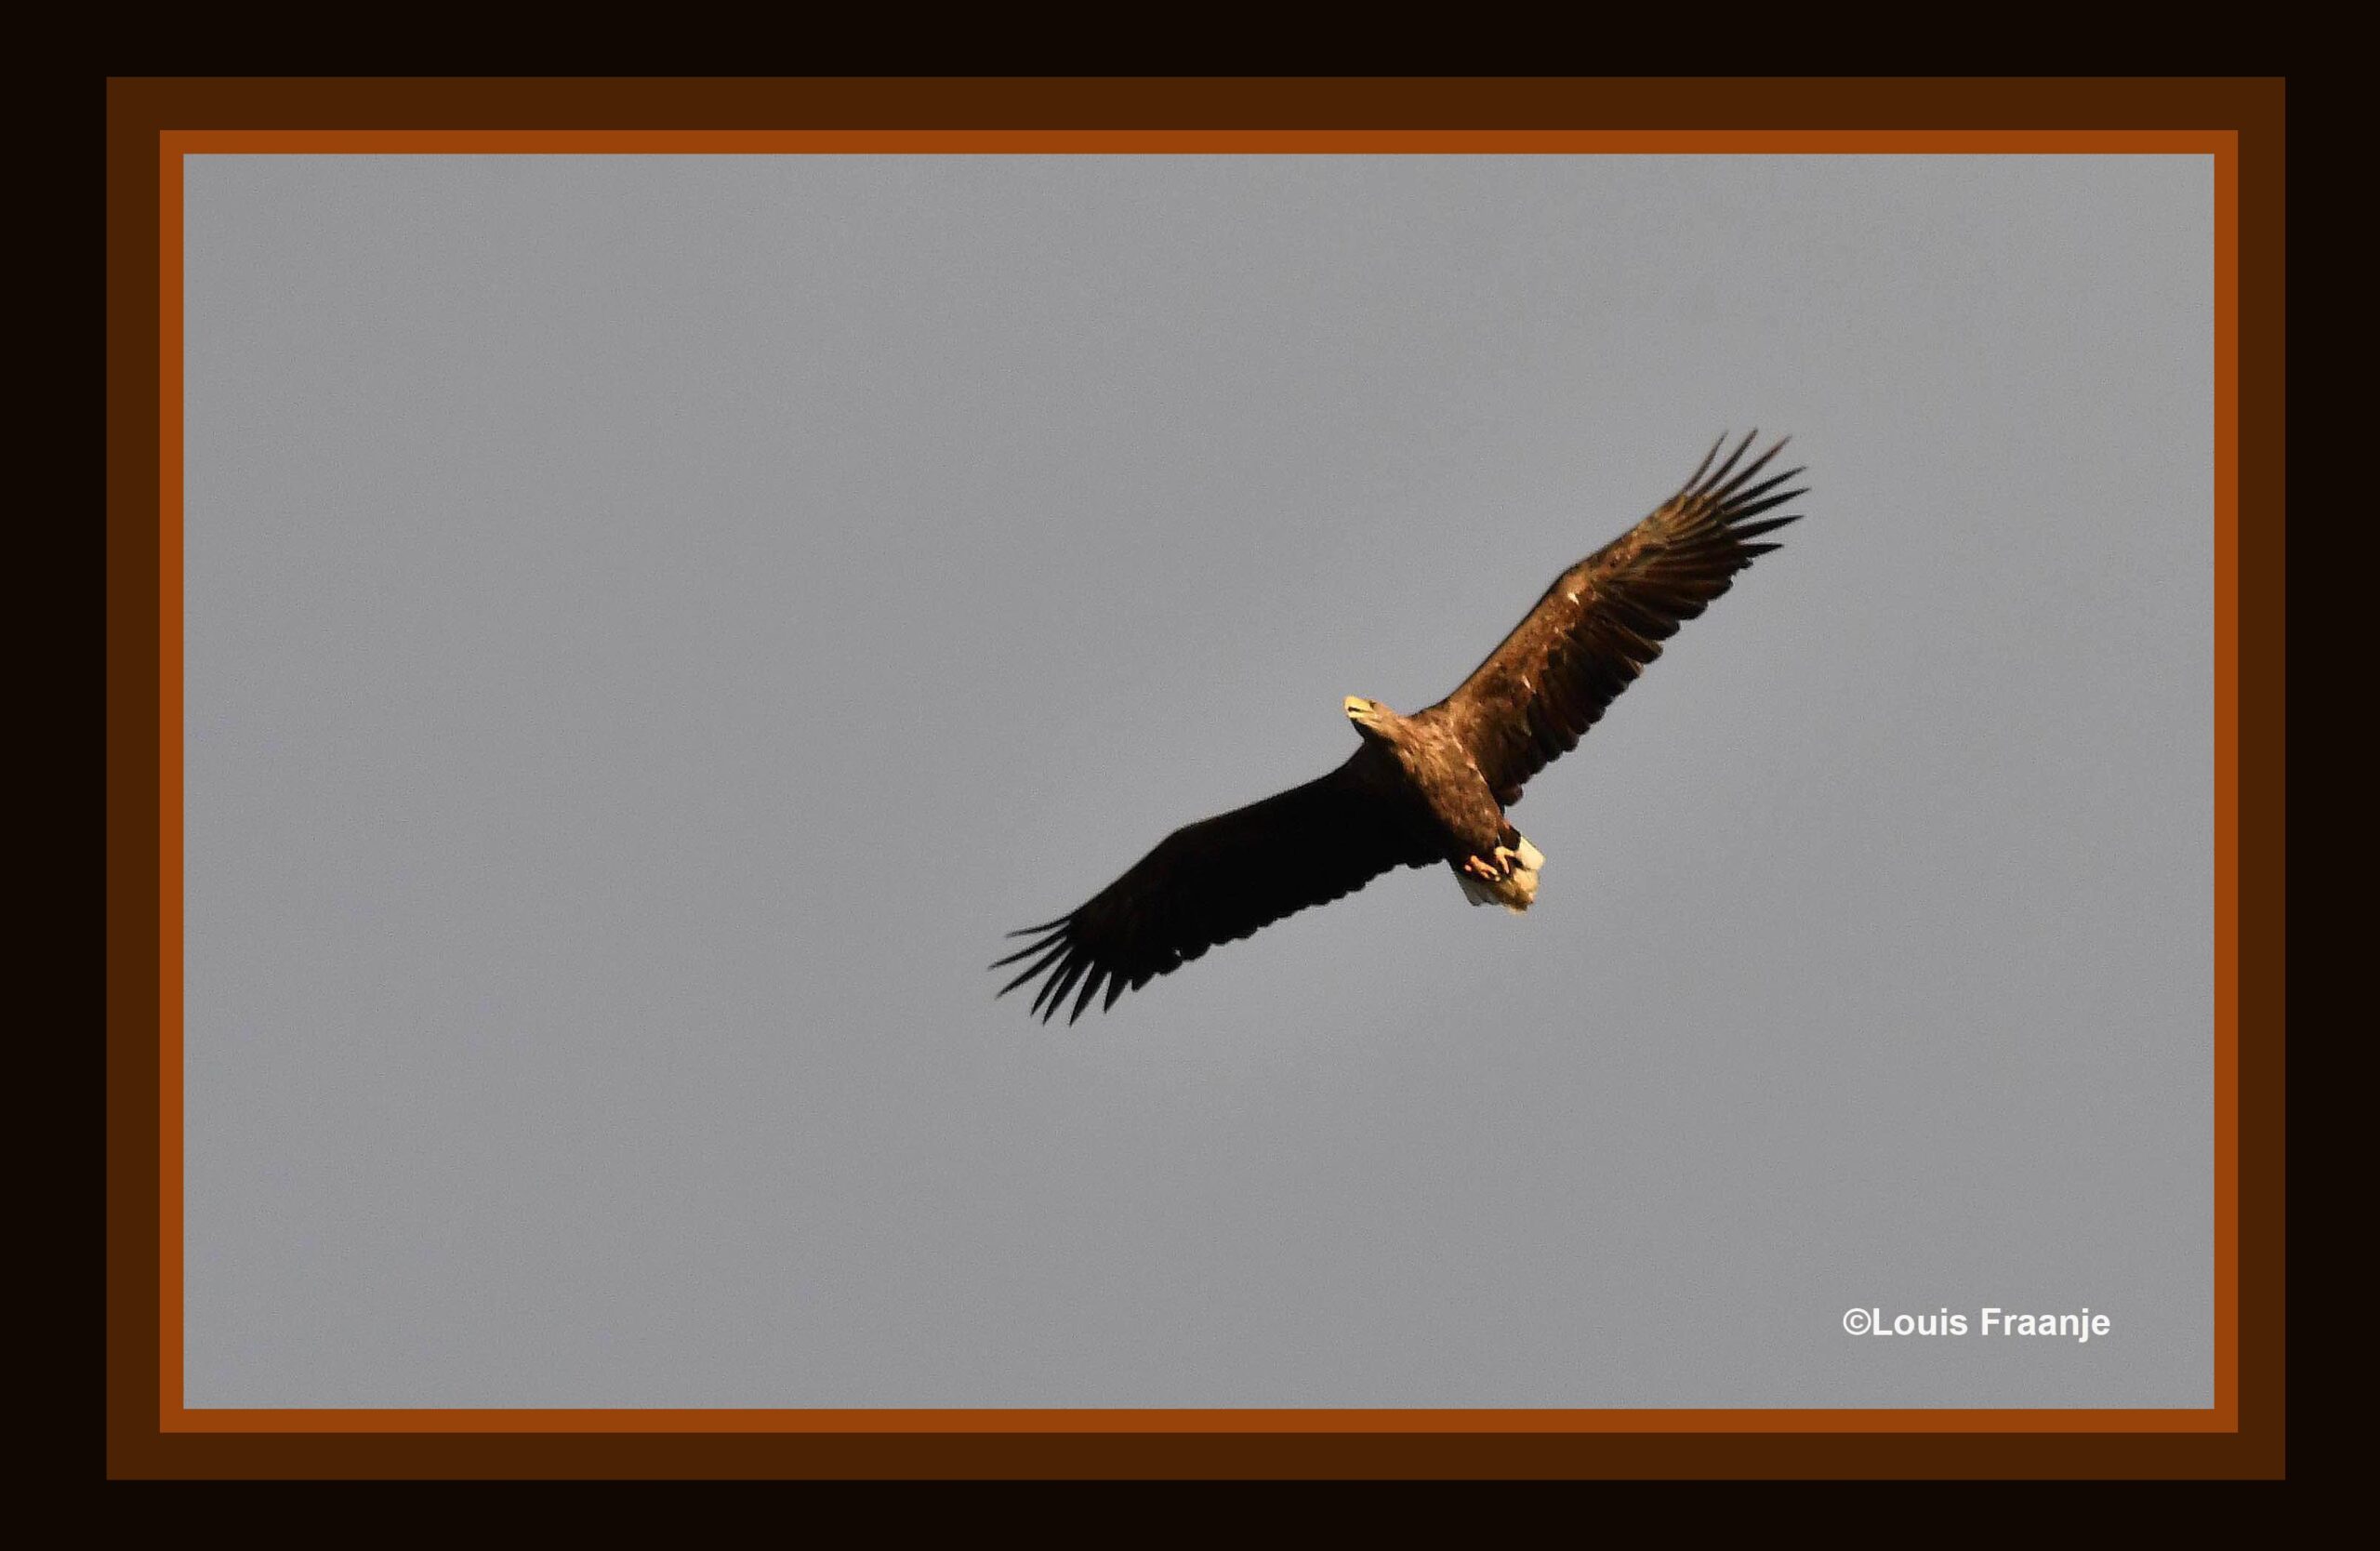 De enorme grote roofvogel bleek een zeearend te zijn, ook wel 'Vliegende deur' genoemd - Foto: ©Louis Fraanje